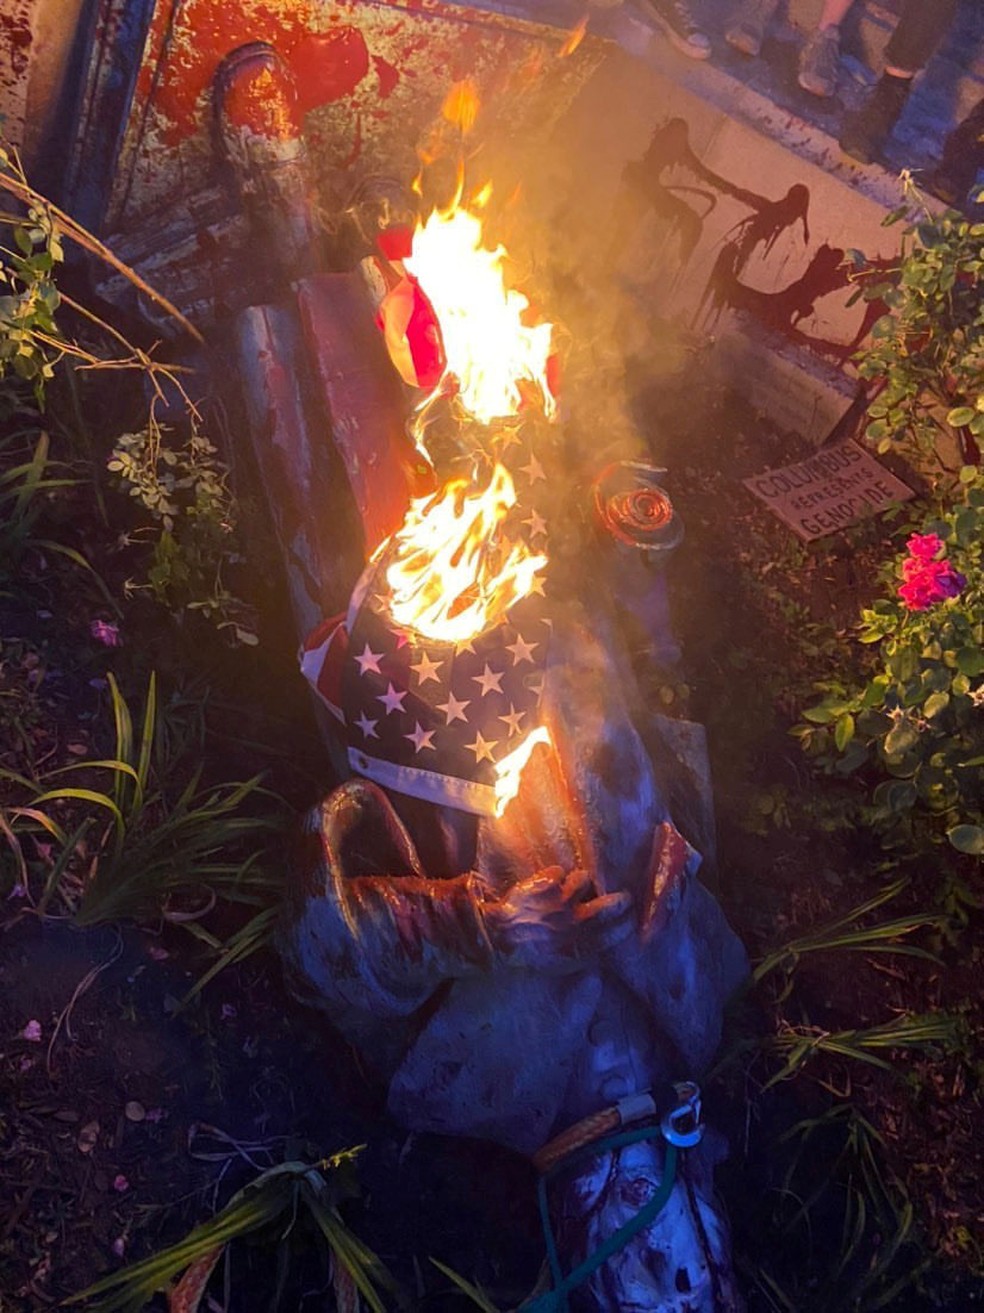 Estátua de Cristóvão Colombo é vista no chão, enrolada em uma bandeira em chamas, após ser retirada do pedestal por manifestantes, em Richmond, Virginia, na terça-feira (9) — Foto: Instagram/@Michaelahatton + @804RRJA/via Reuter